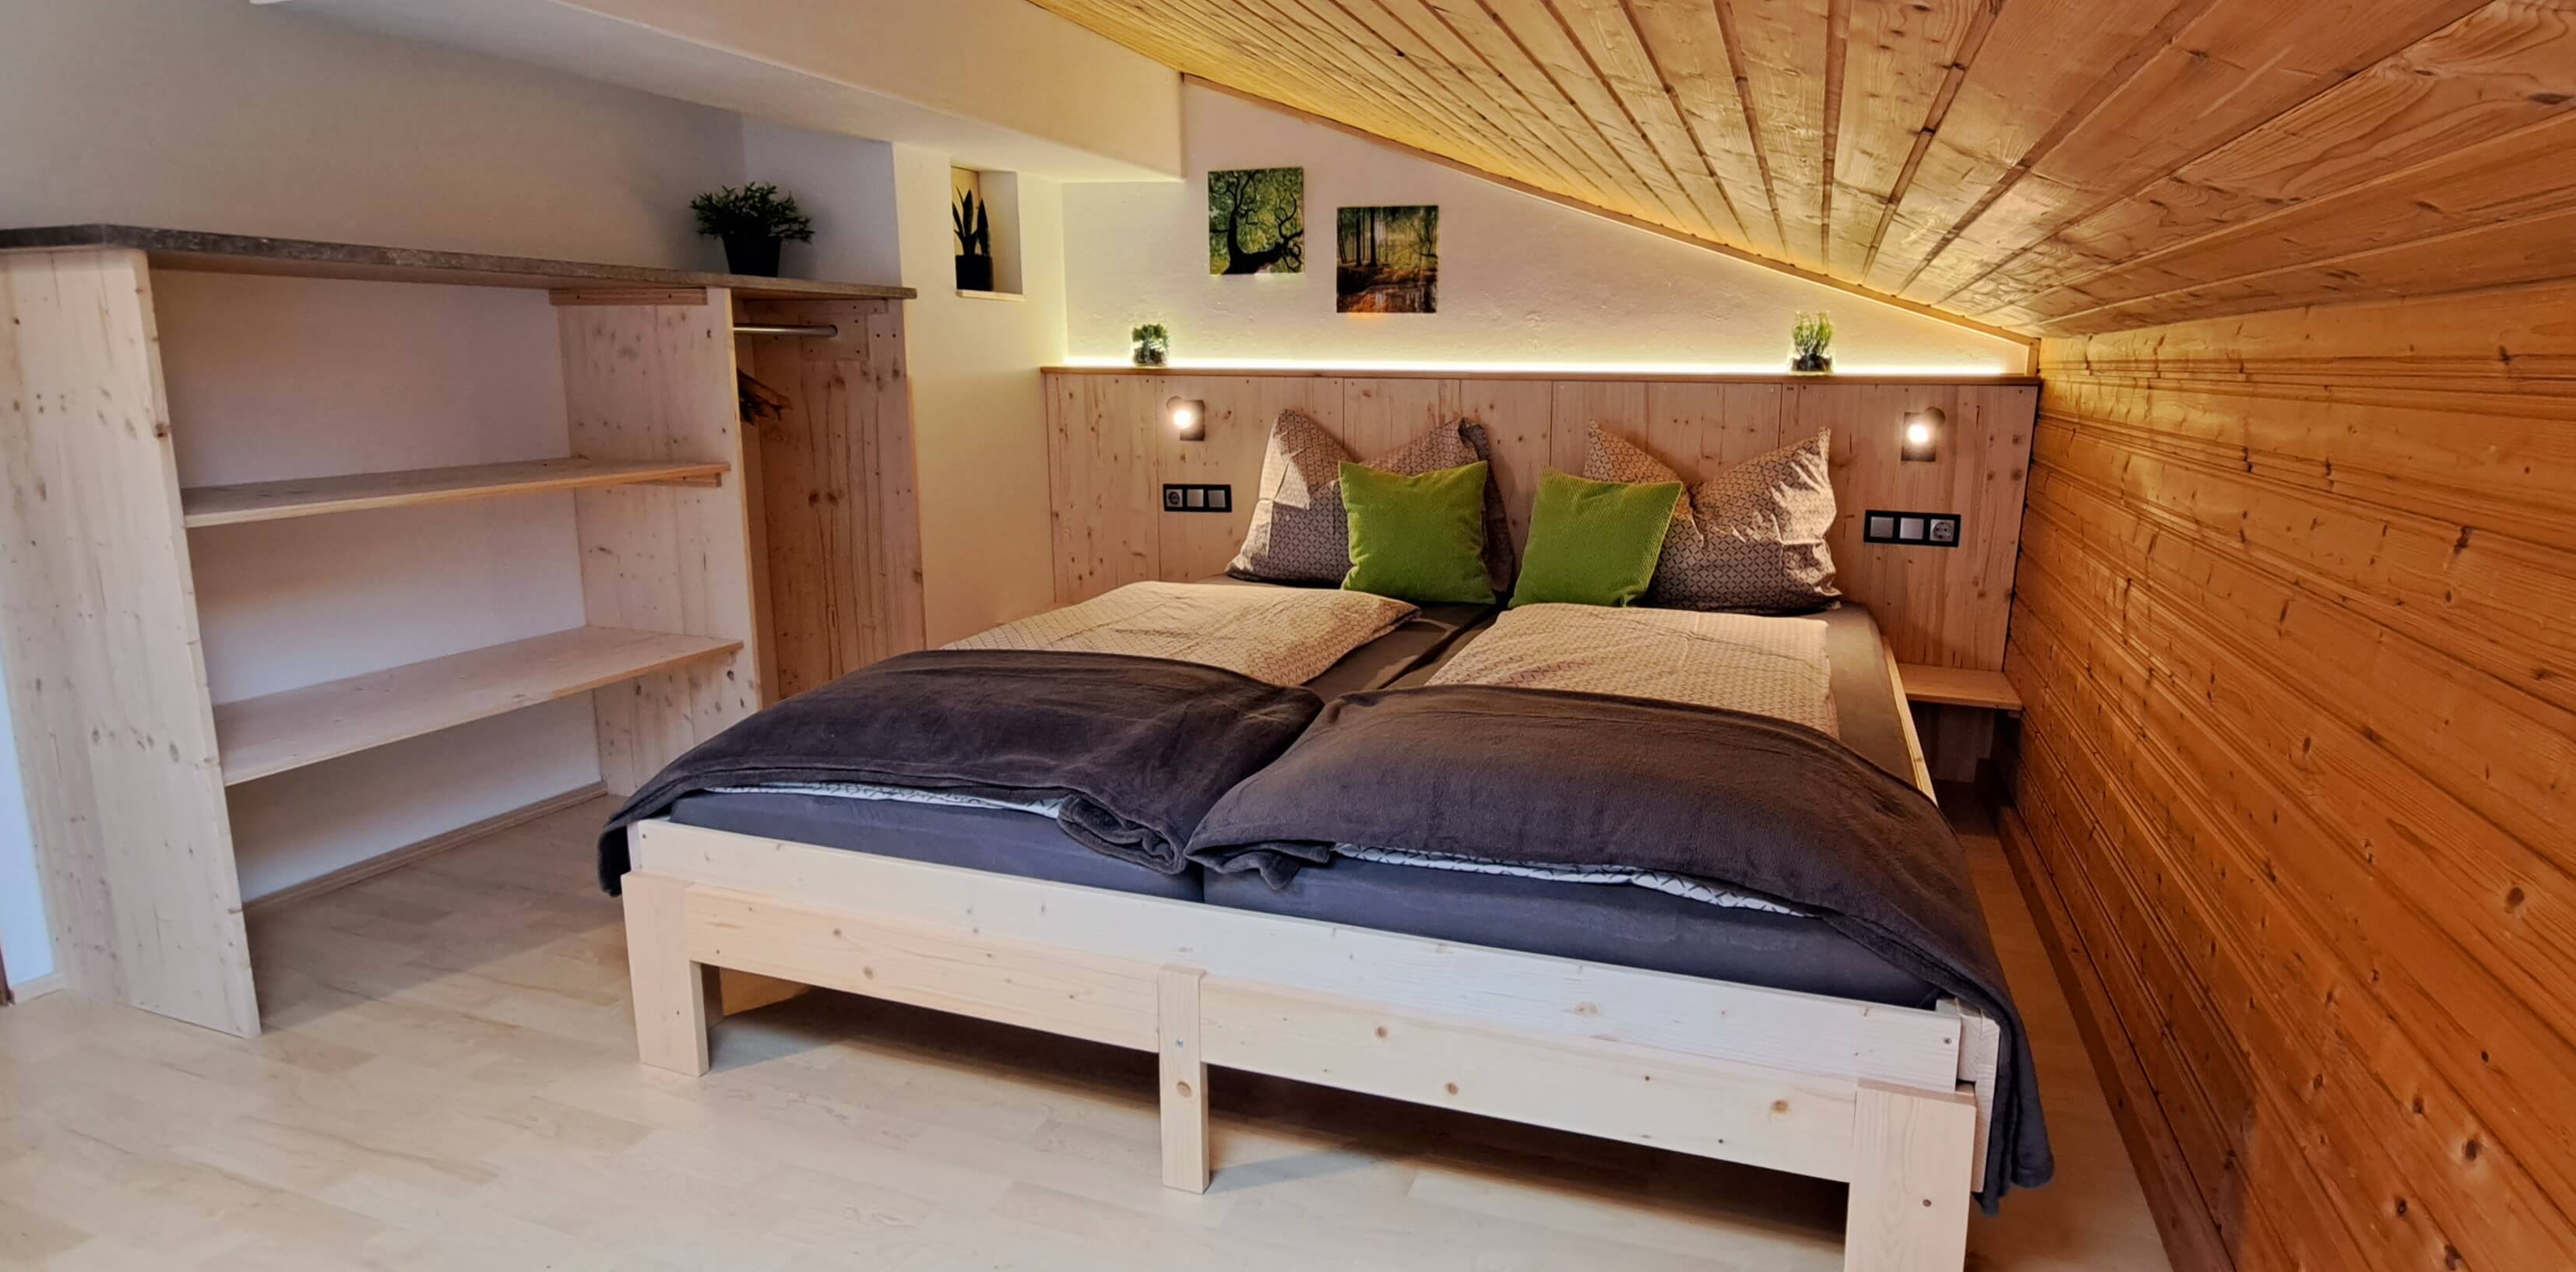 Schlafzimmer mit Holzeinrichtung